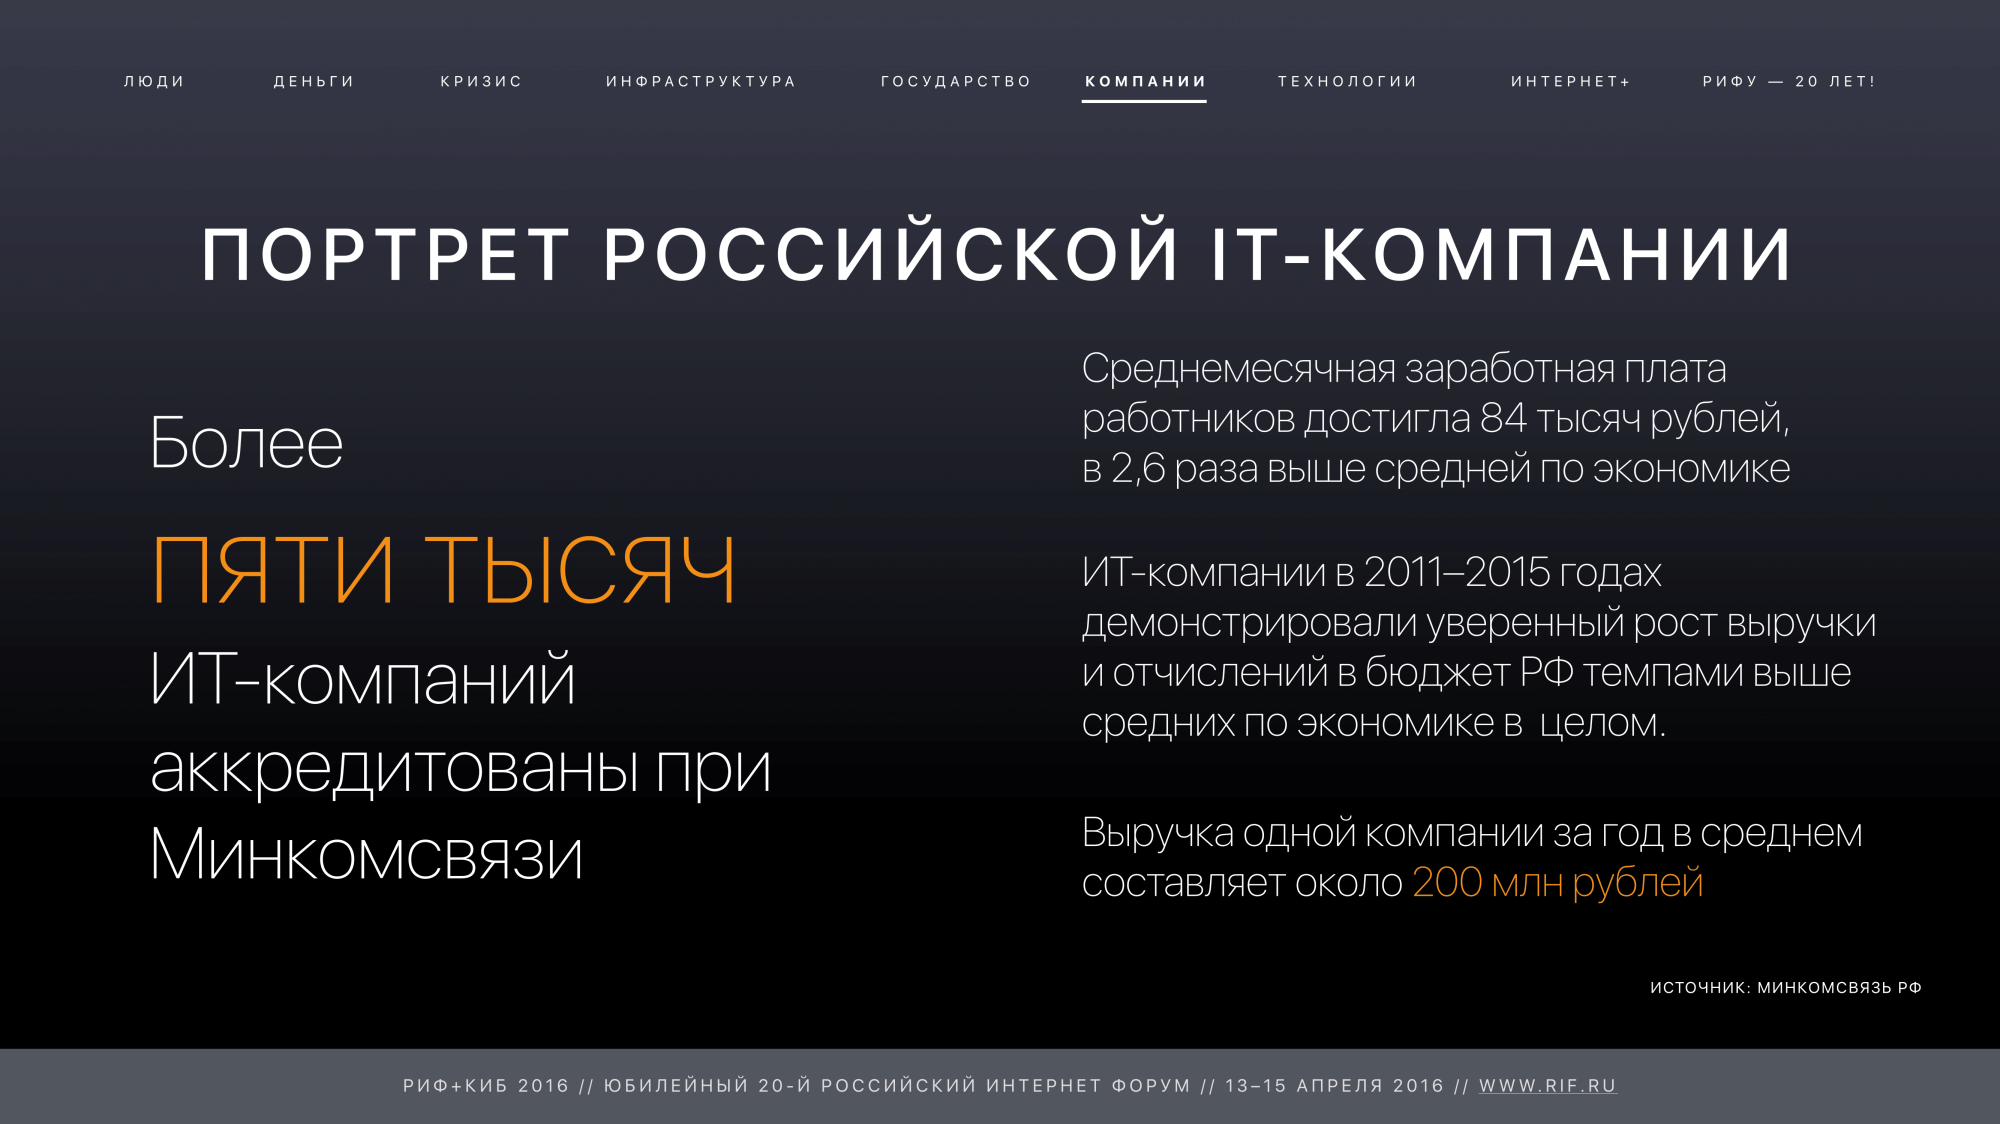 РИФ+КИБ 2016: Портрет российской IT-компании